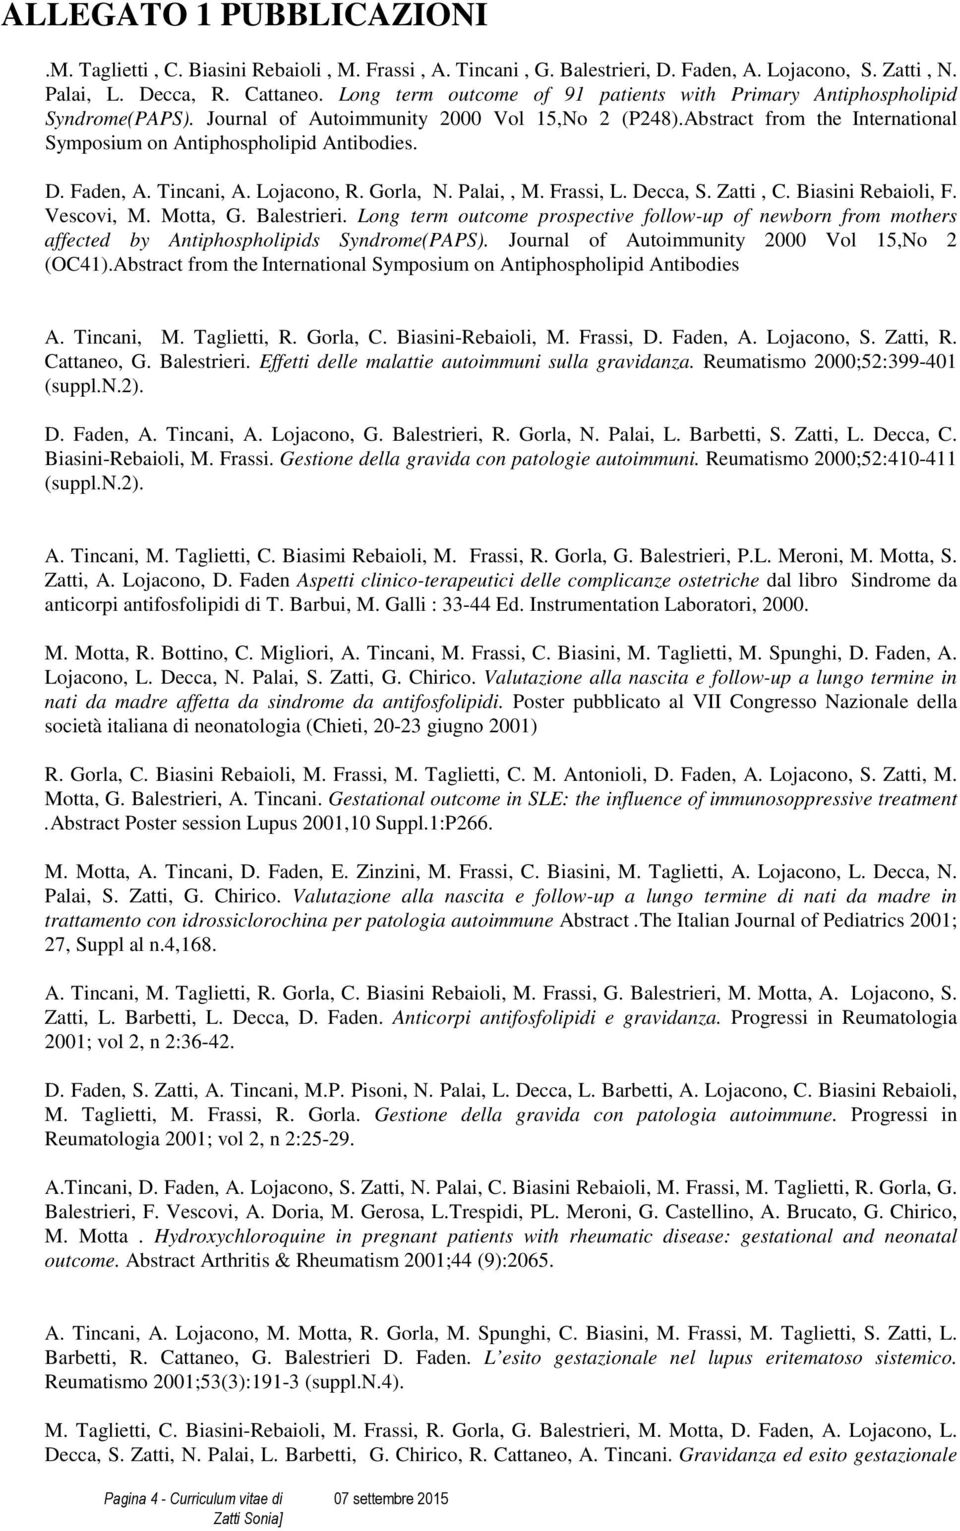 D. Faden, A. Tincani, A. Lojacono, R. Gorla, N. Palai,, M. Frassi, L. Decca, S. Zatti, C. Biasini Rebaioli, F. Vescovi, M. Motta, G. Balestrieri.